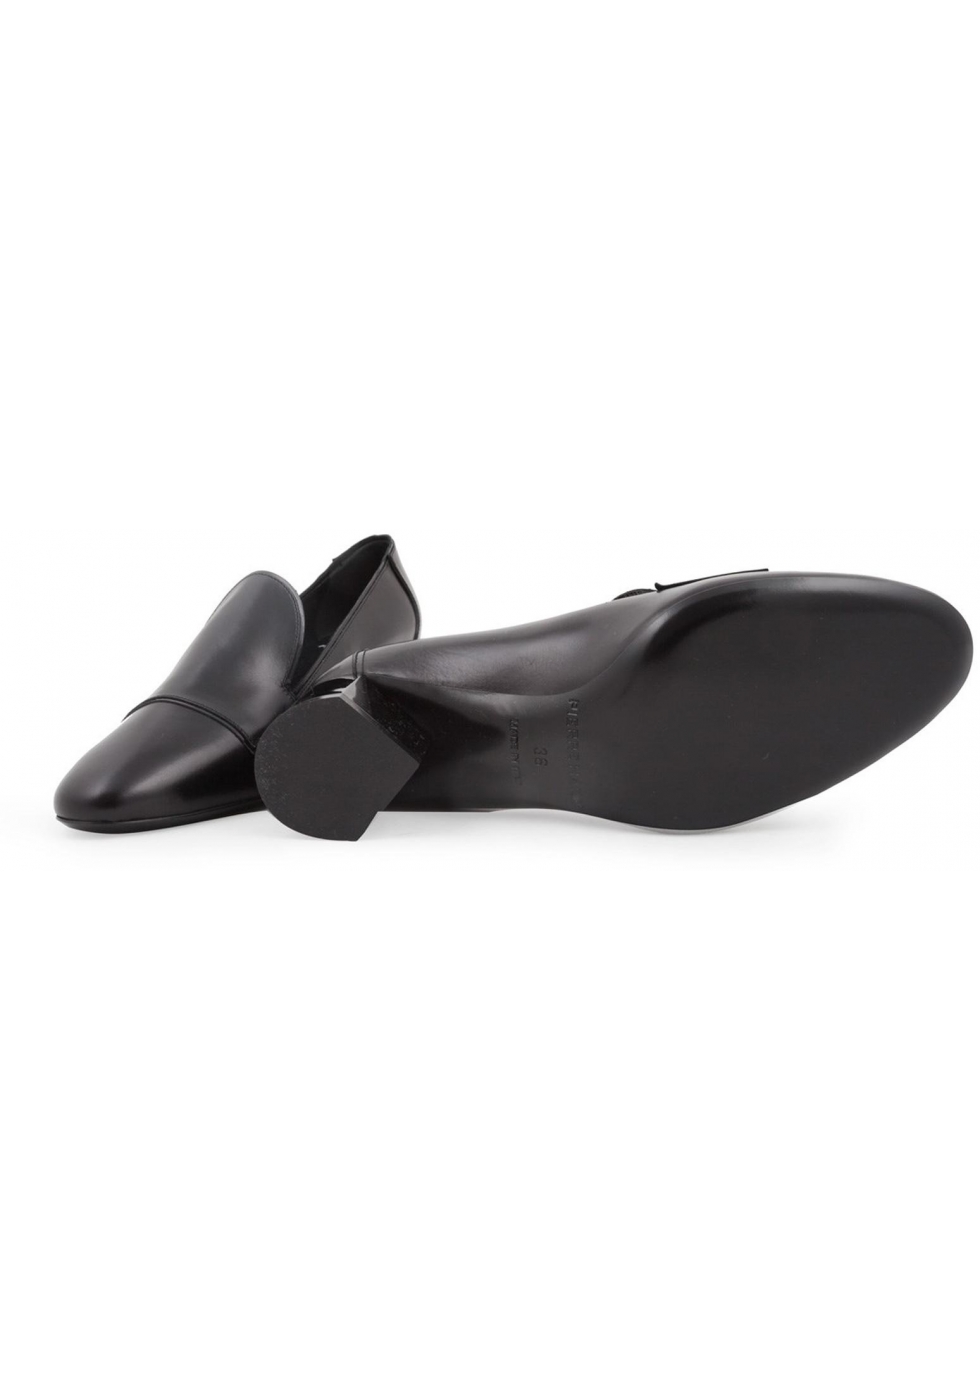 Pierre Hardy kitten heels pumps in black calf leather - Italian Boutique